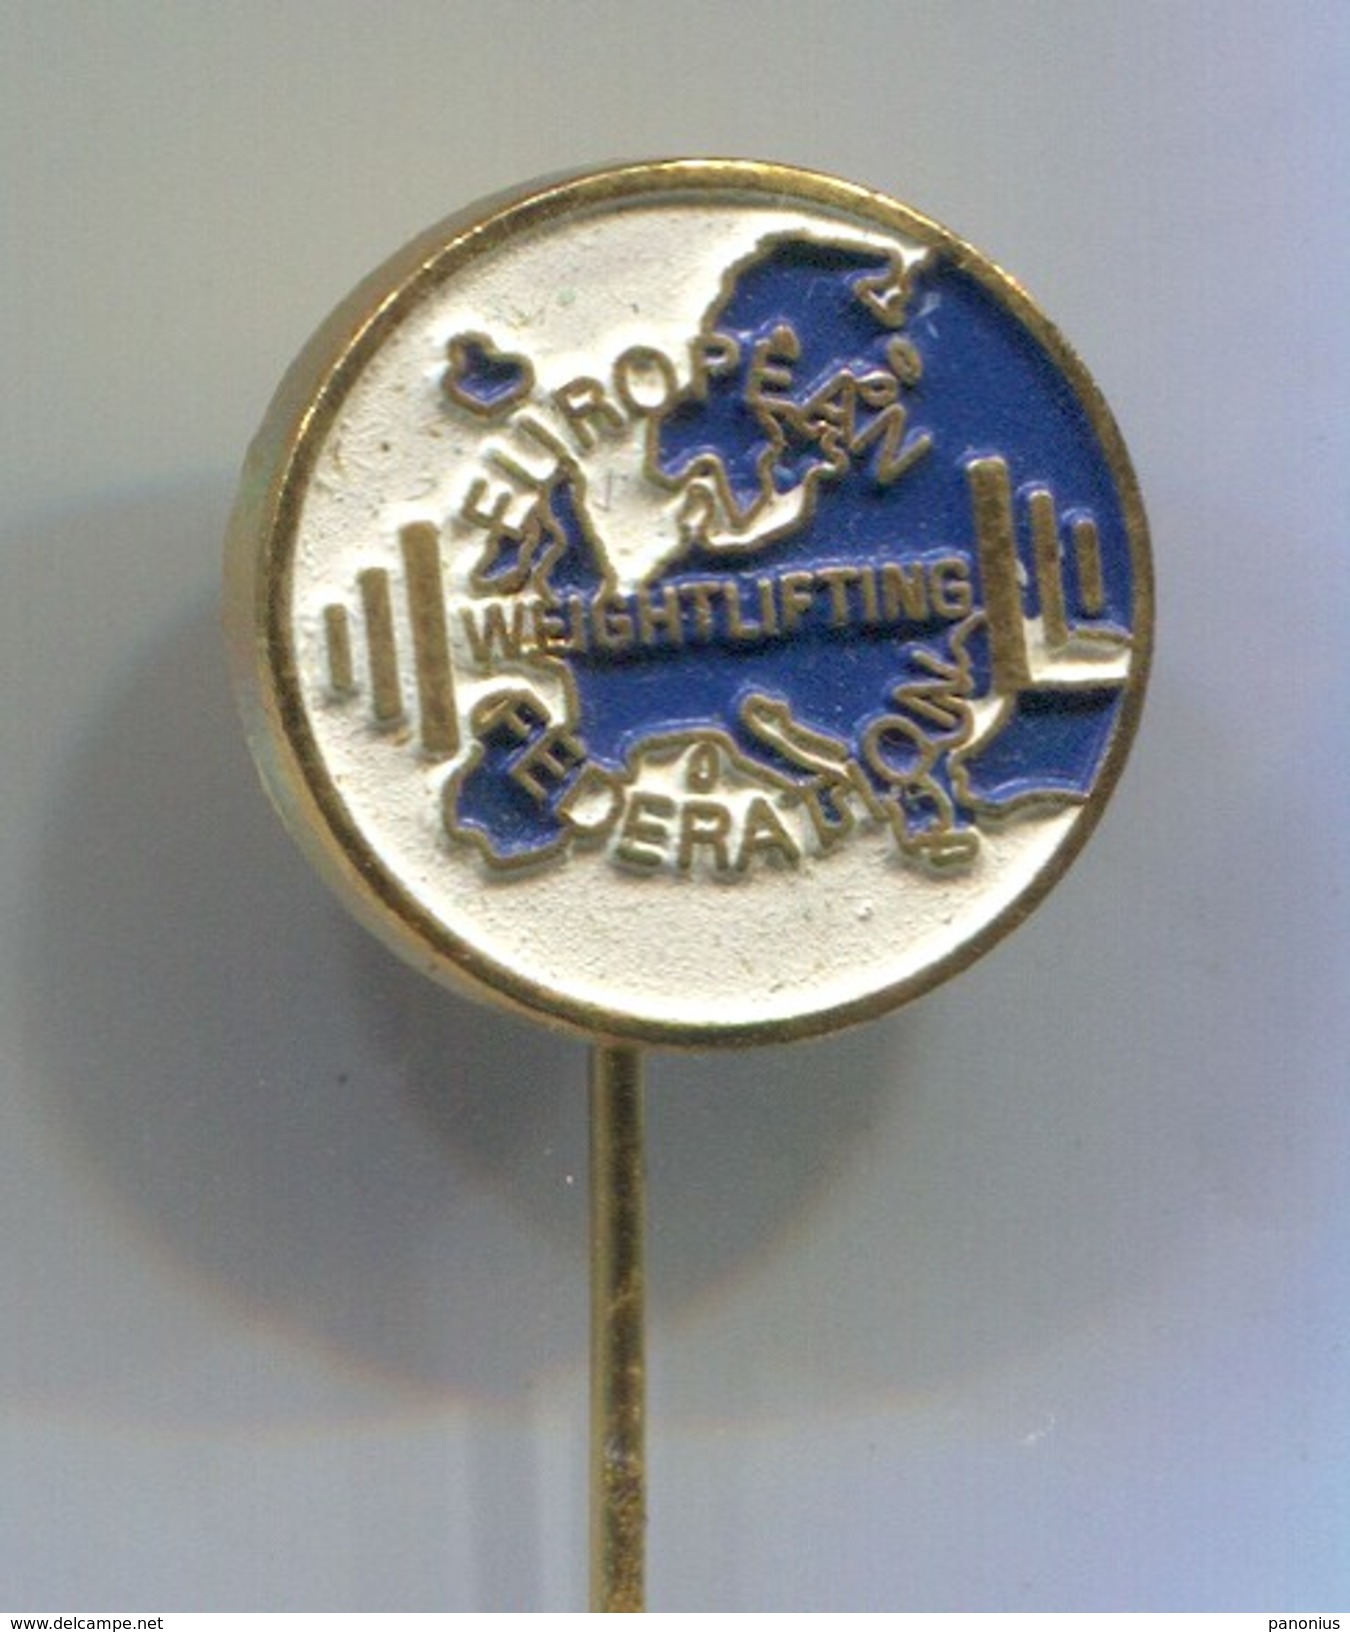 Weightlifting - EUROPEAN FEDERATION, Vintage Pin Badge, Abzeichen - Gewichtheben